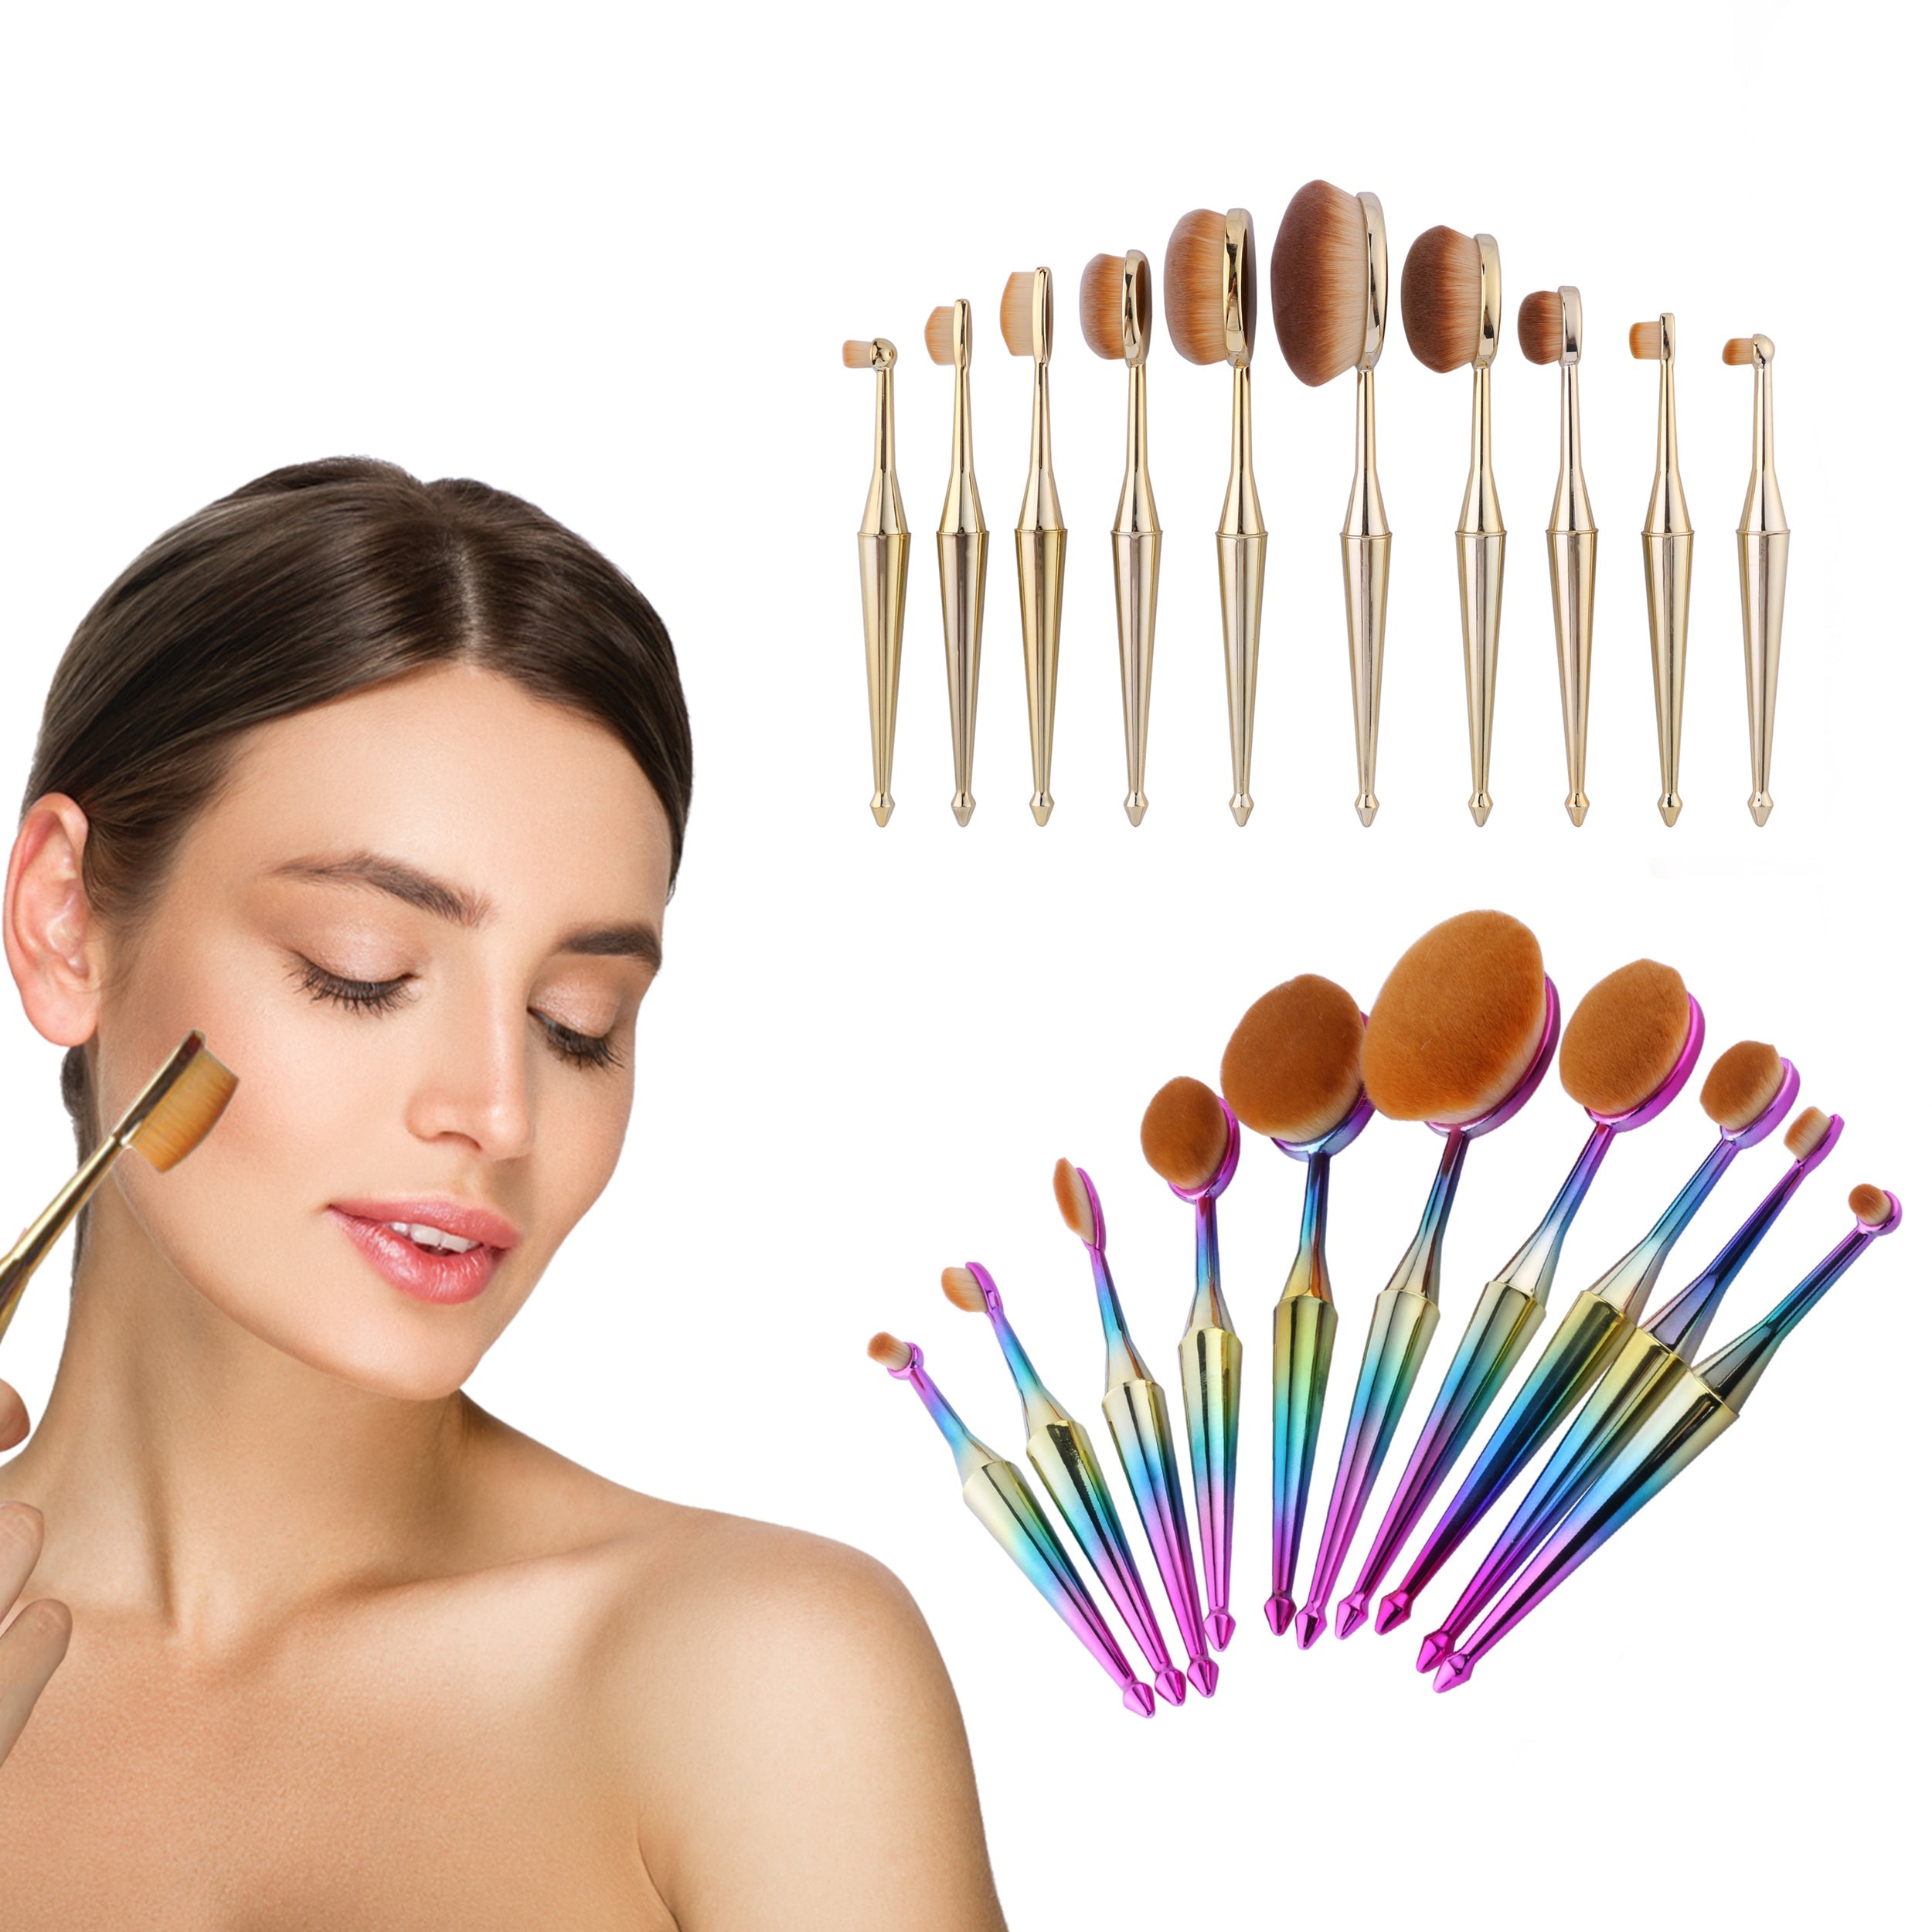 How to Use an Oval Makeup Brush - L'Oréal Paris